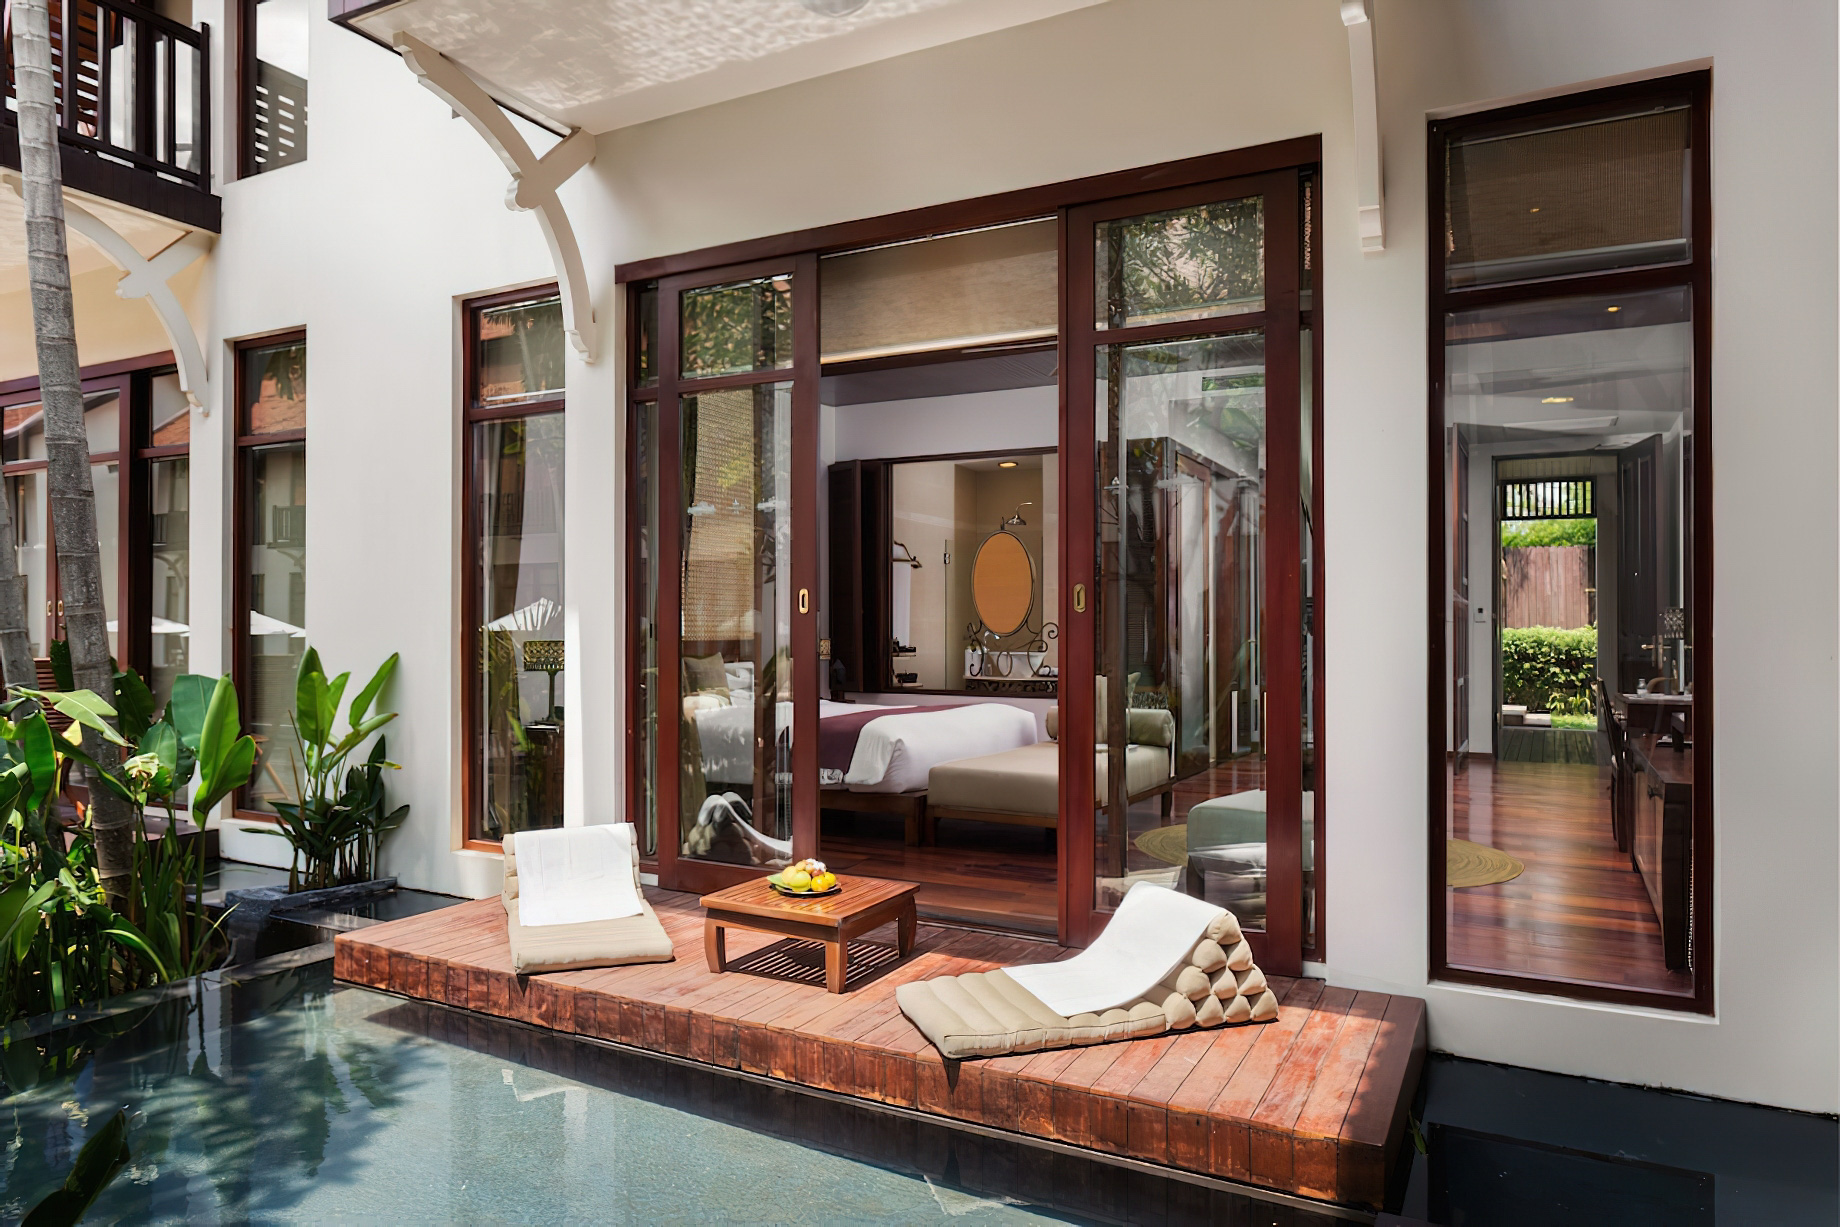 Anantara Angkor Resort - Siem Reap, Cambodia - Guest Suite Deck